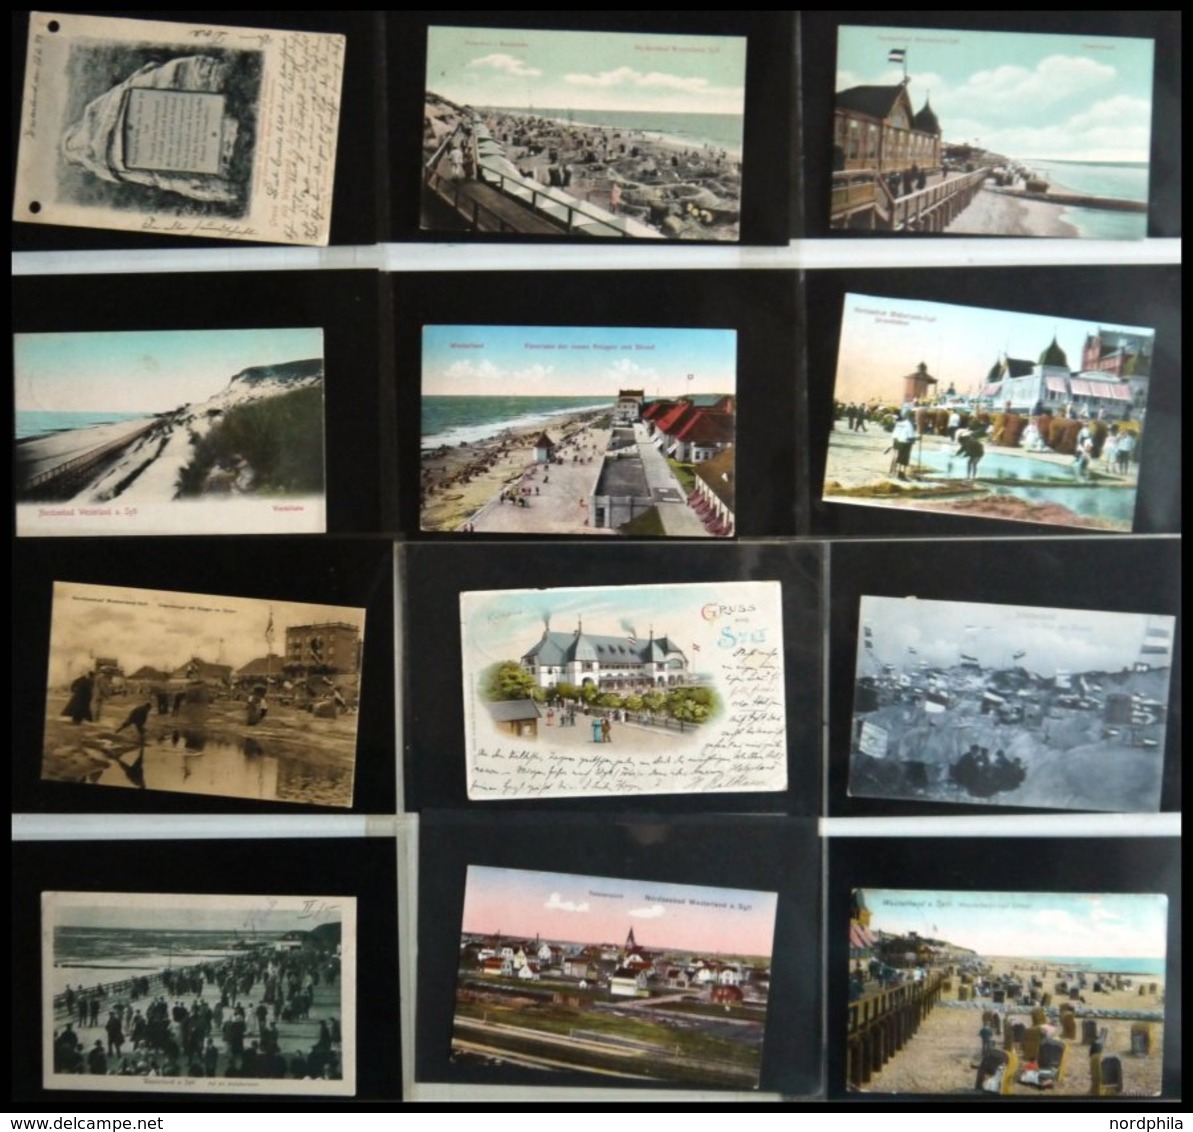 DEUTSCHLAND ETC. SYLT - Westerland, Sammlung von 100 verschiedenen Ansichtskarten im Briefalbum, dabei Gruß aus-Karten, 